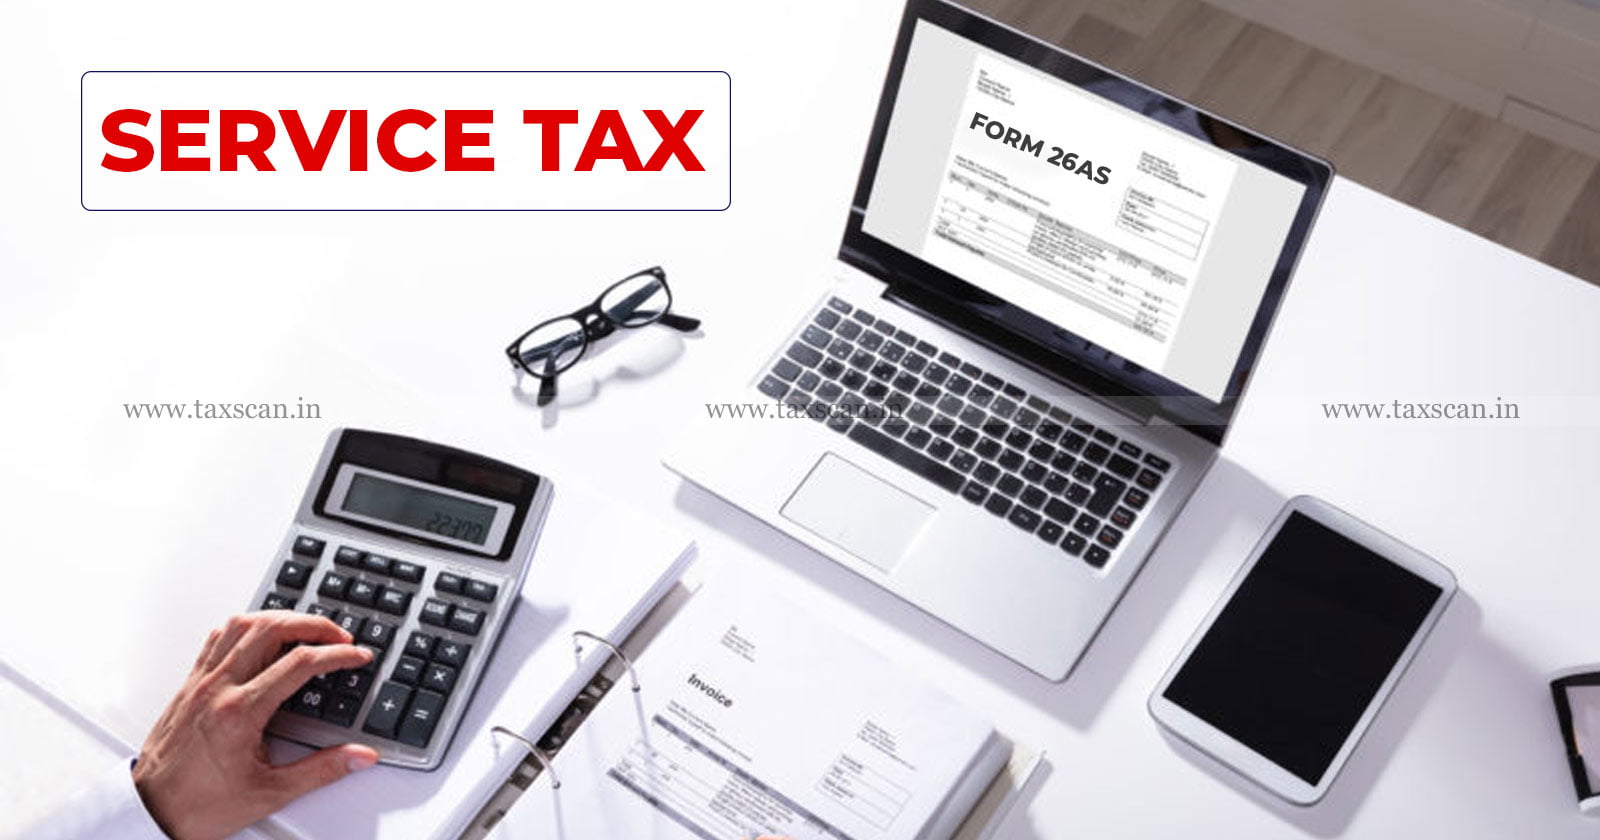 Service Tax - Rent - Form 26AS - ITAT - Tax - taxscan